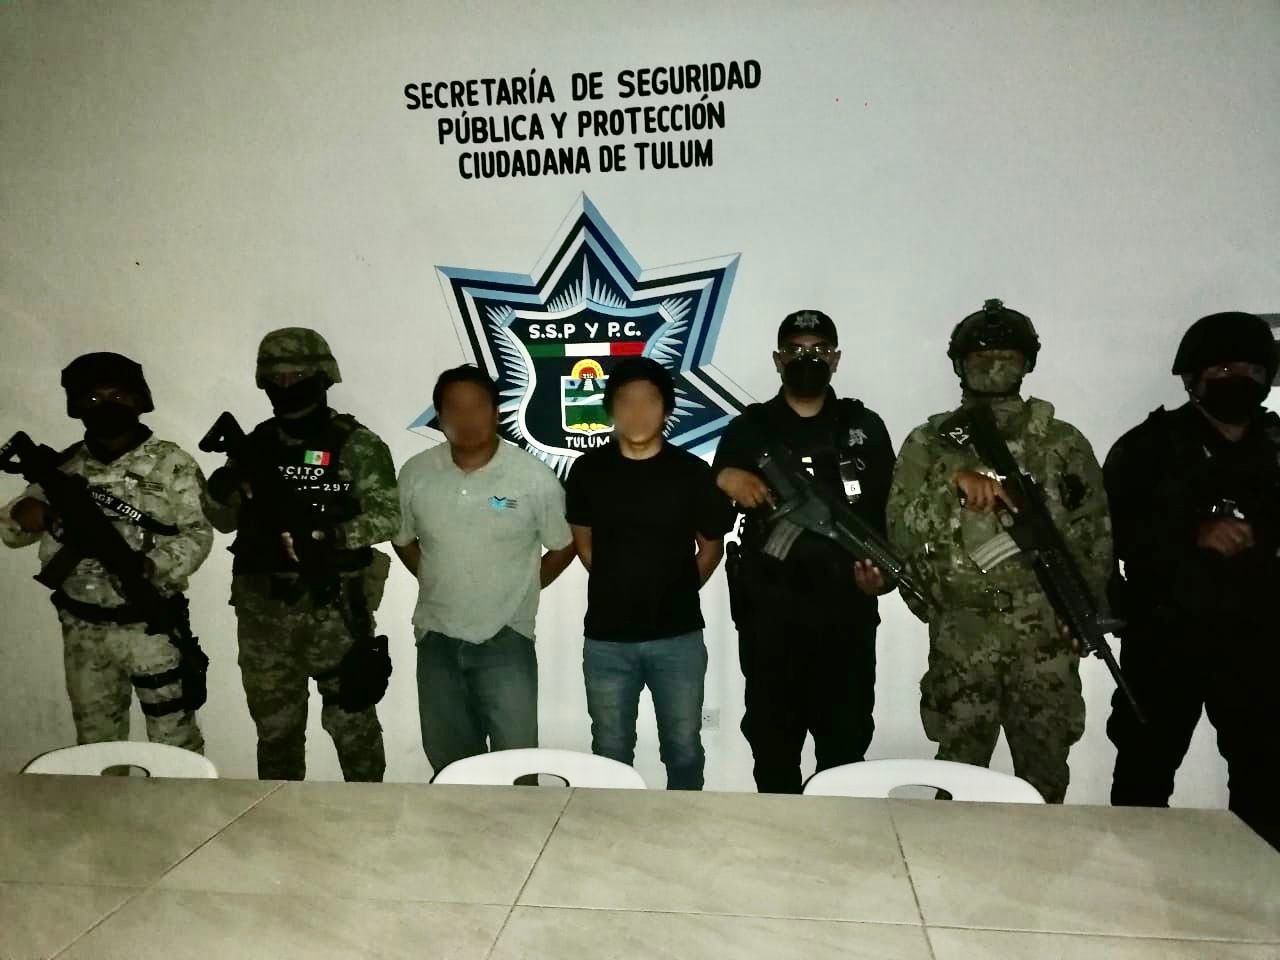 Los detenidos fueron puestos a disposición de la Fiscalía General de Quintana Roo en Tulum para definir su situación legal